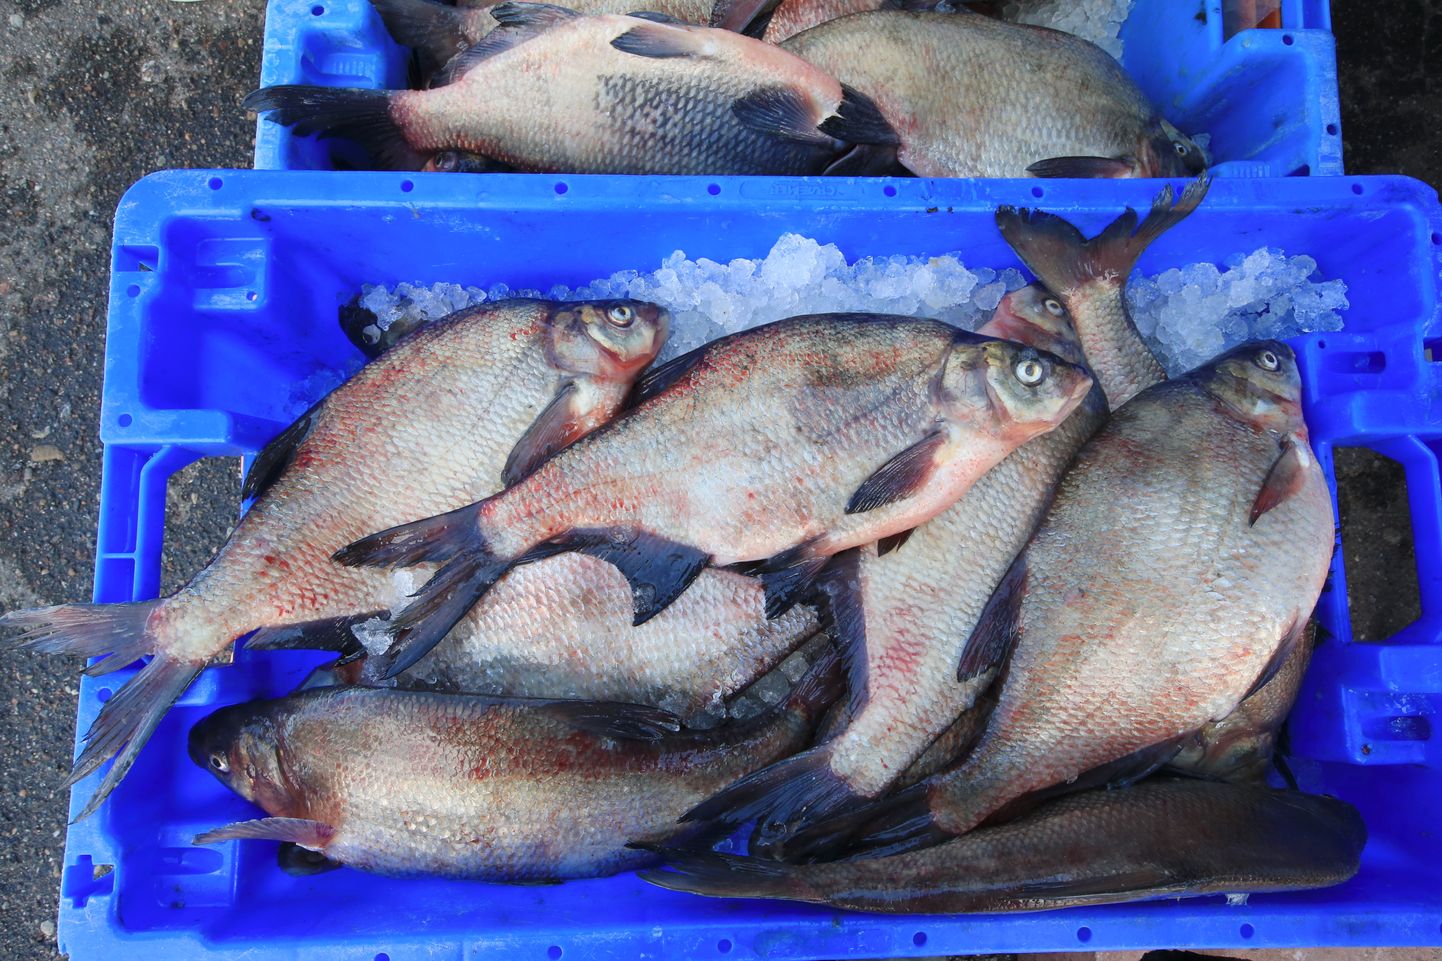 Lõuna-Eesti kalastajate klubi esitas aasta kala kandidaadiks latika.